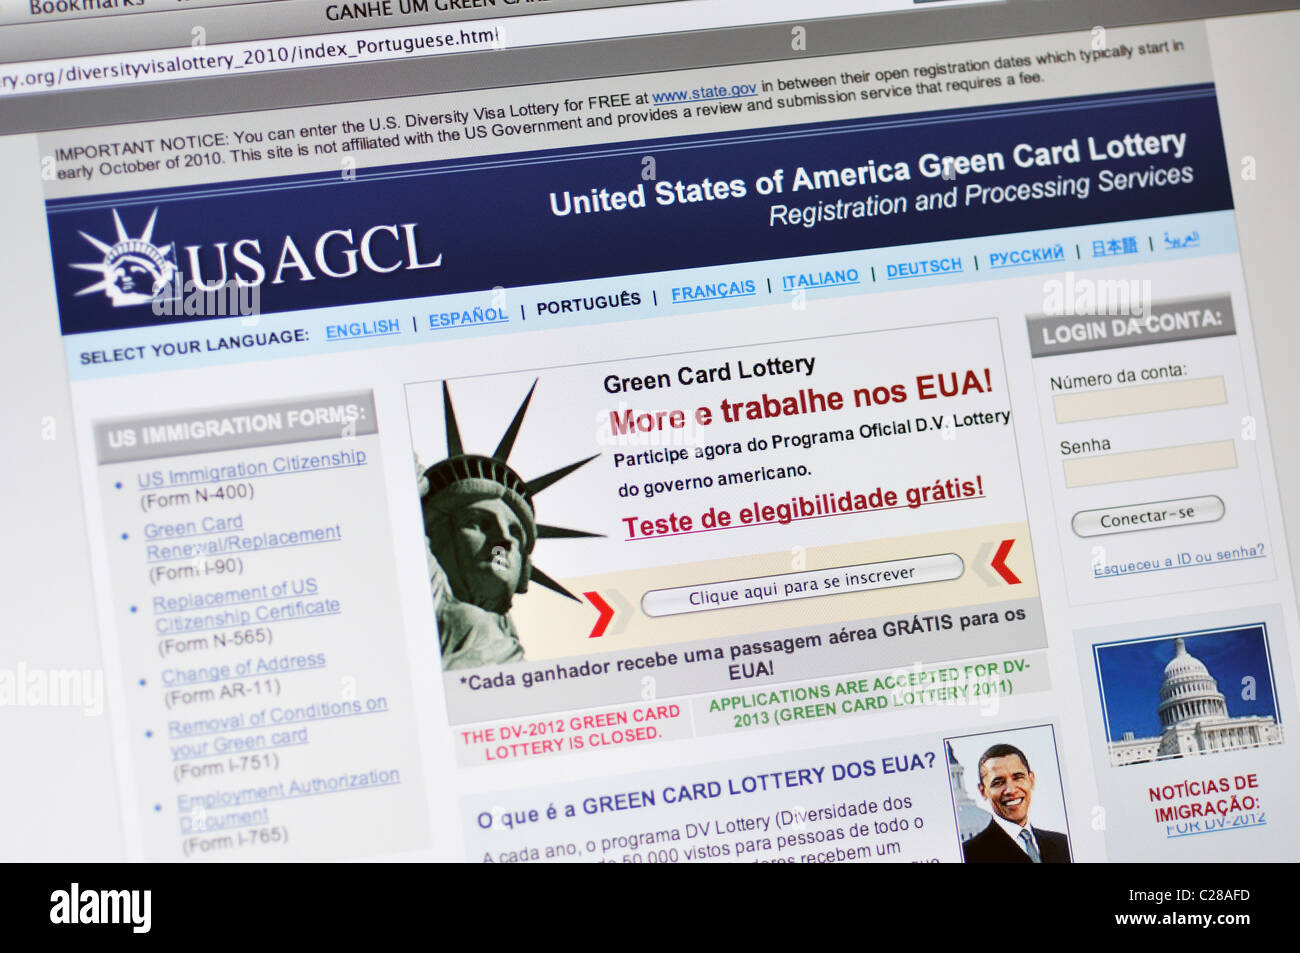 USAGCL Website - Vereinigte Staaten von Amerika Greencard Lotterie - in portugiesischer Sprache Stockfoto